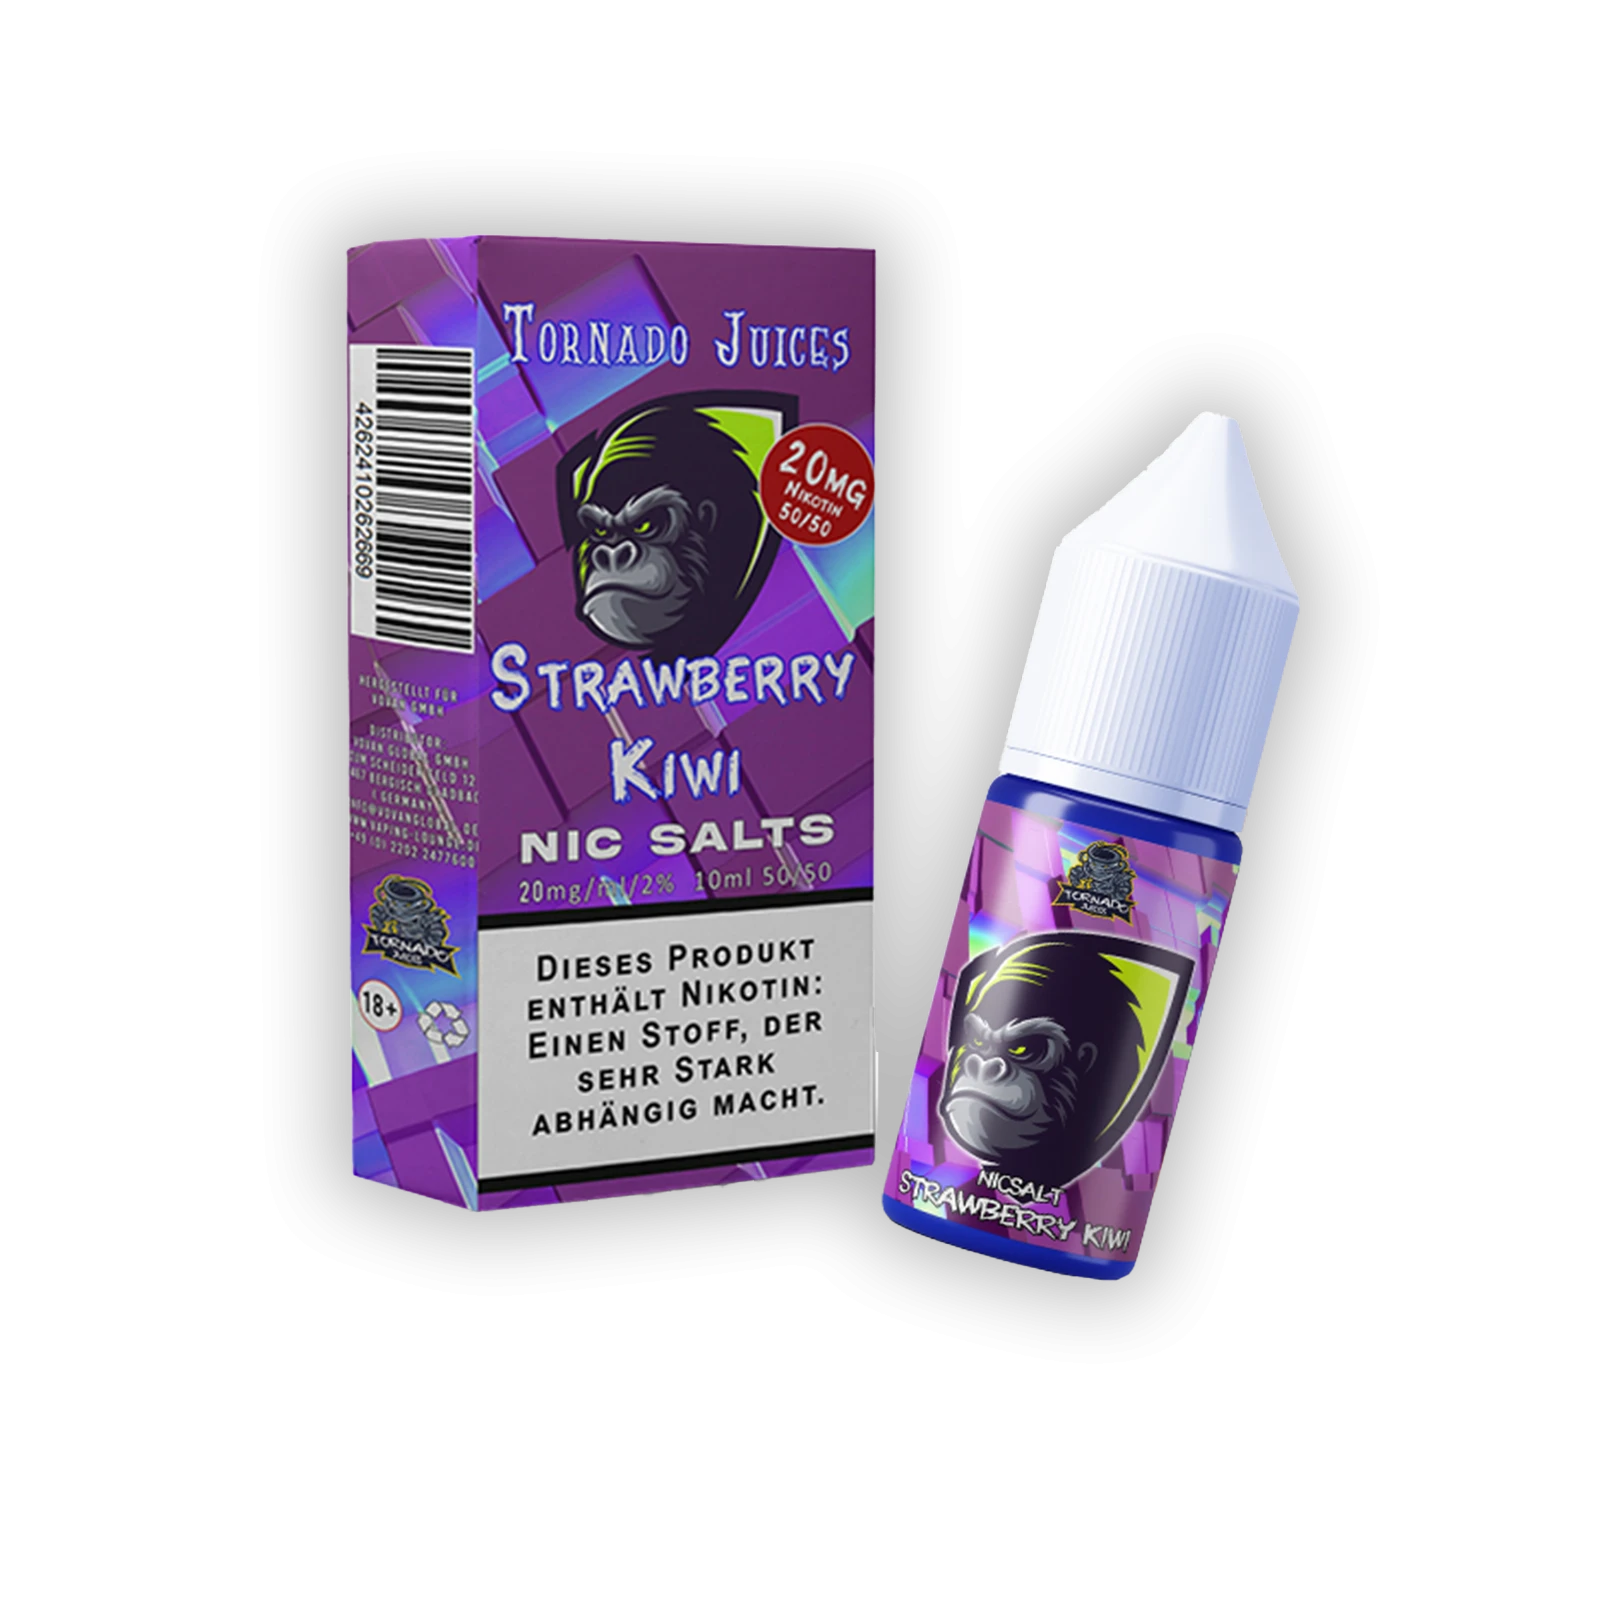 Tornado Juices Strawberry Kiwi Vape E-Liquid mit Nikotinsalz 2